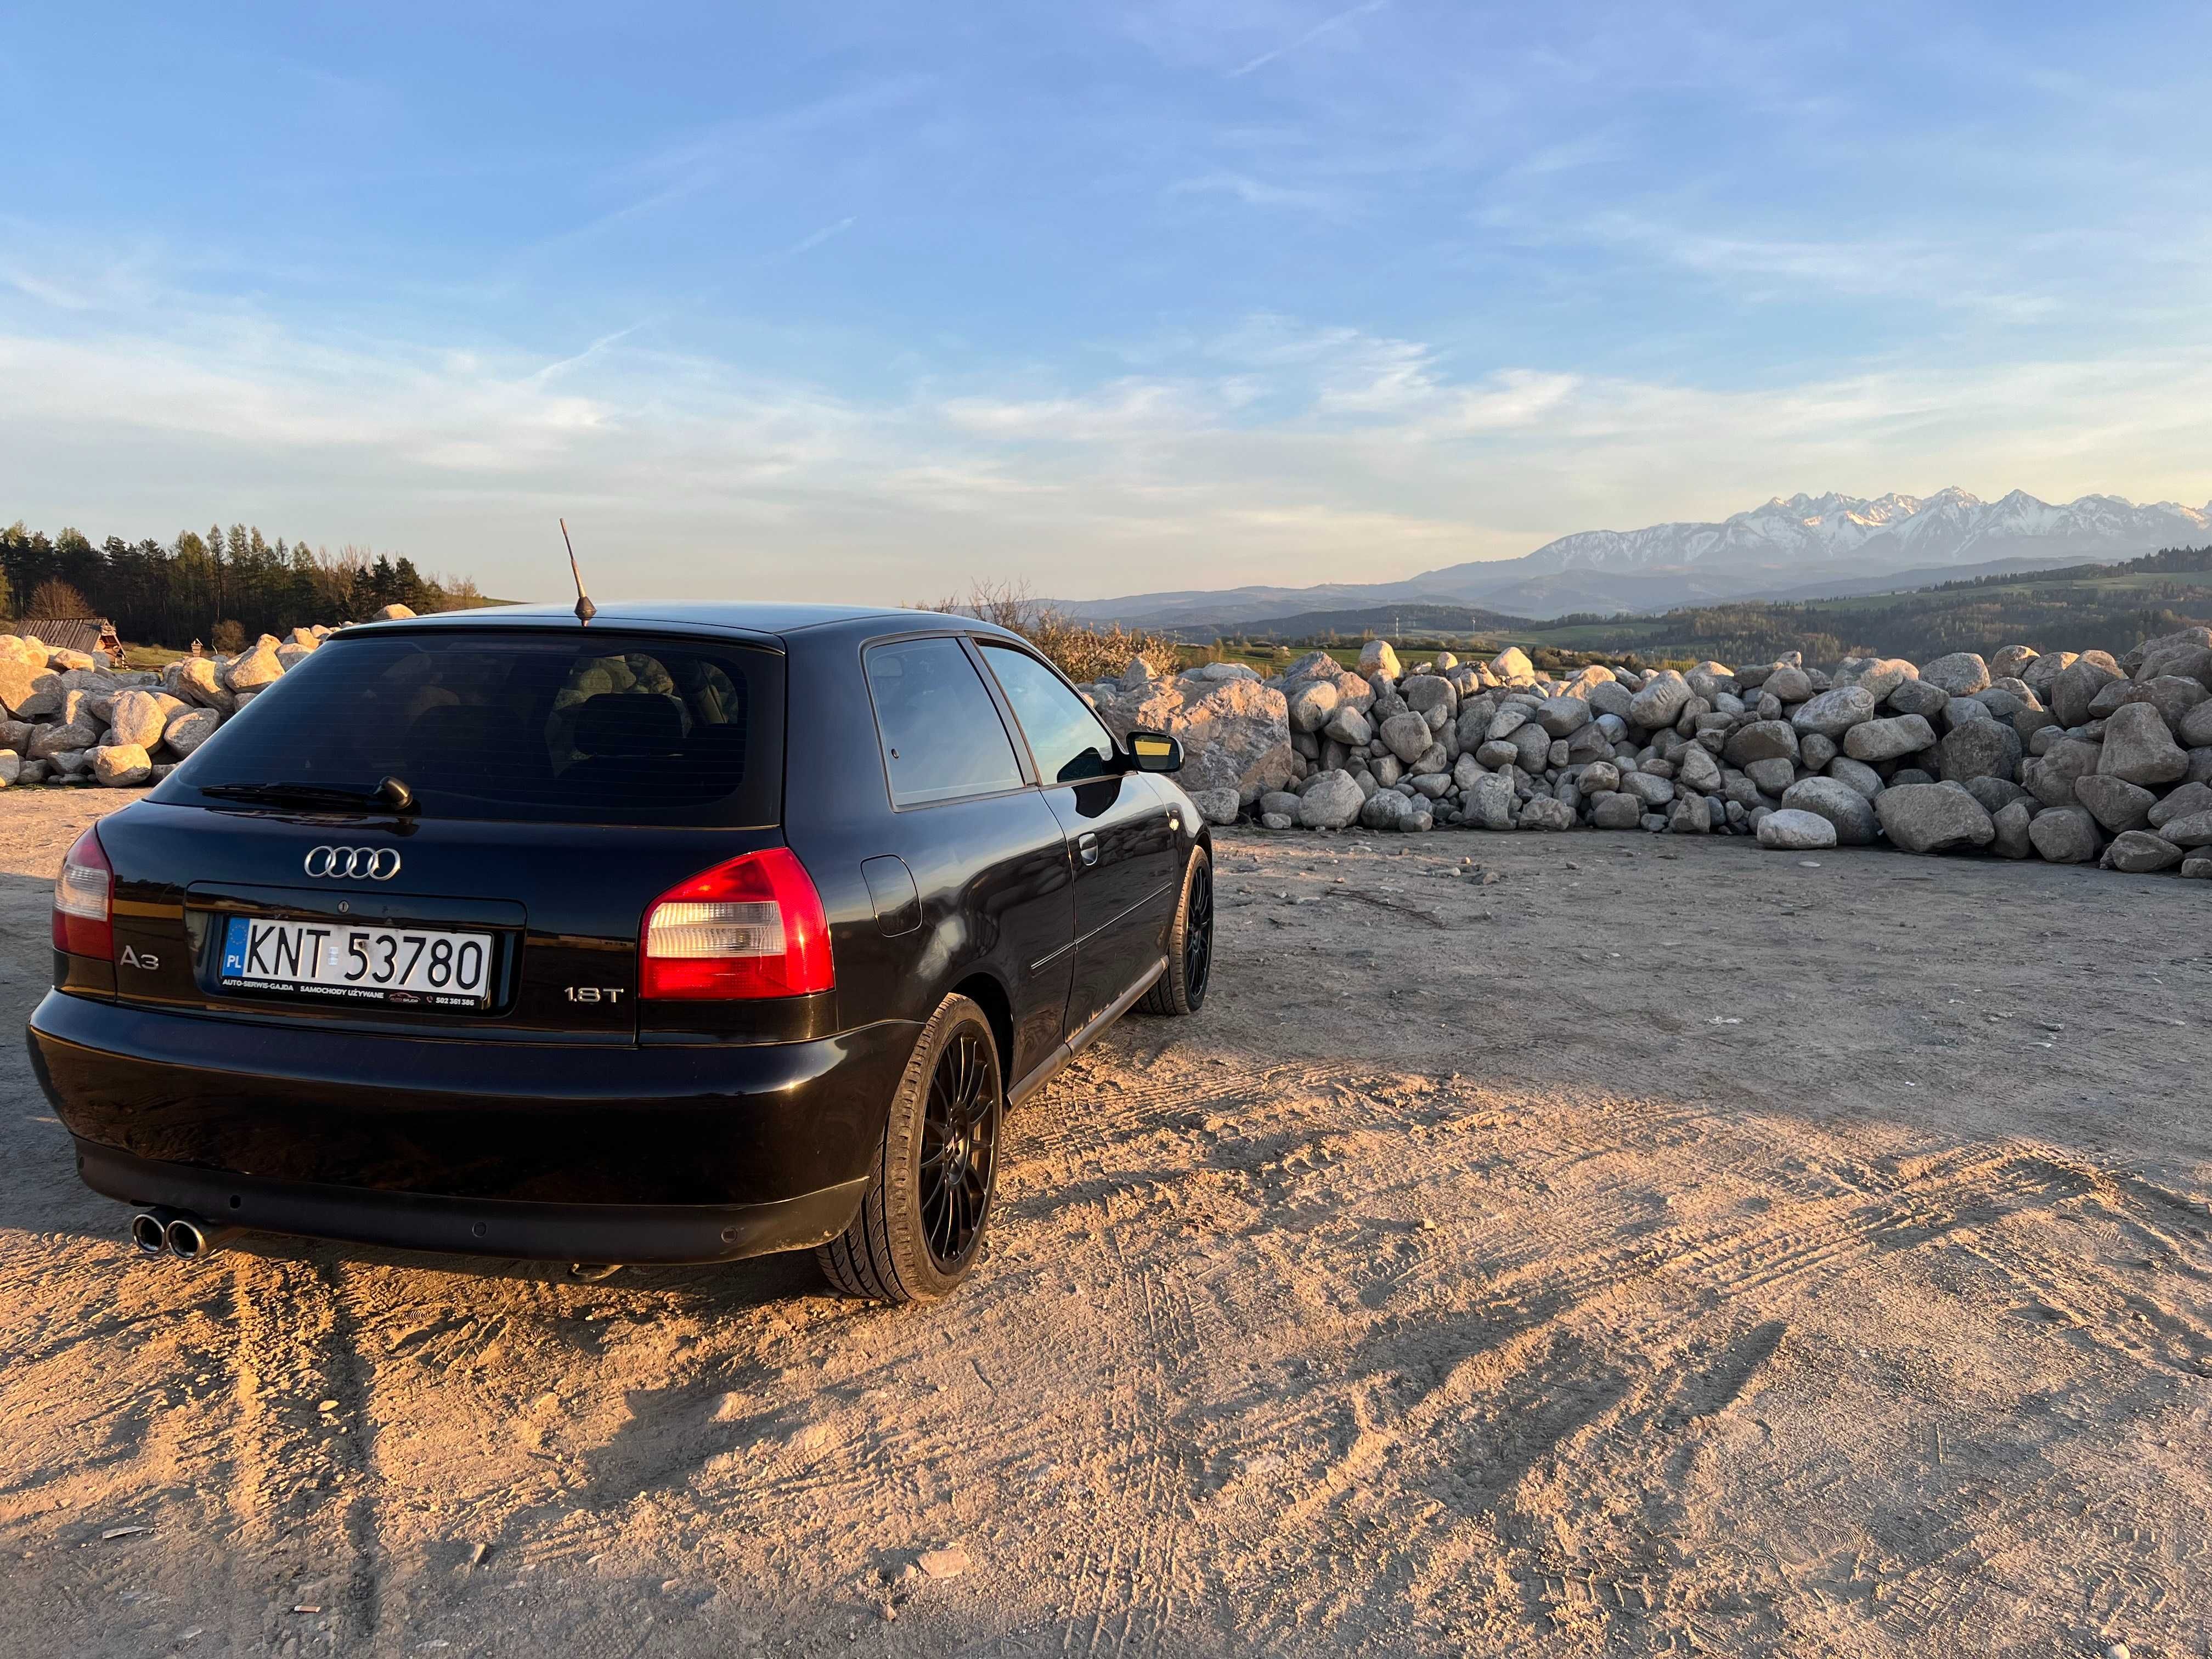 Audi A3 8L, 1.8T, 2002